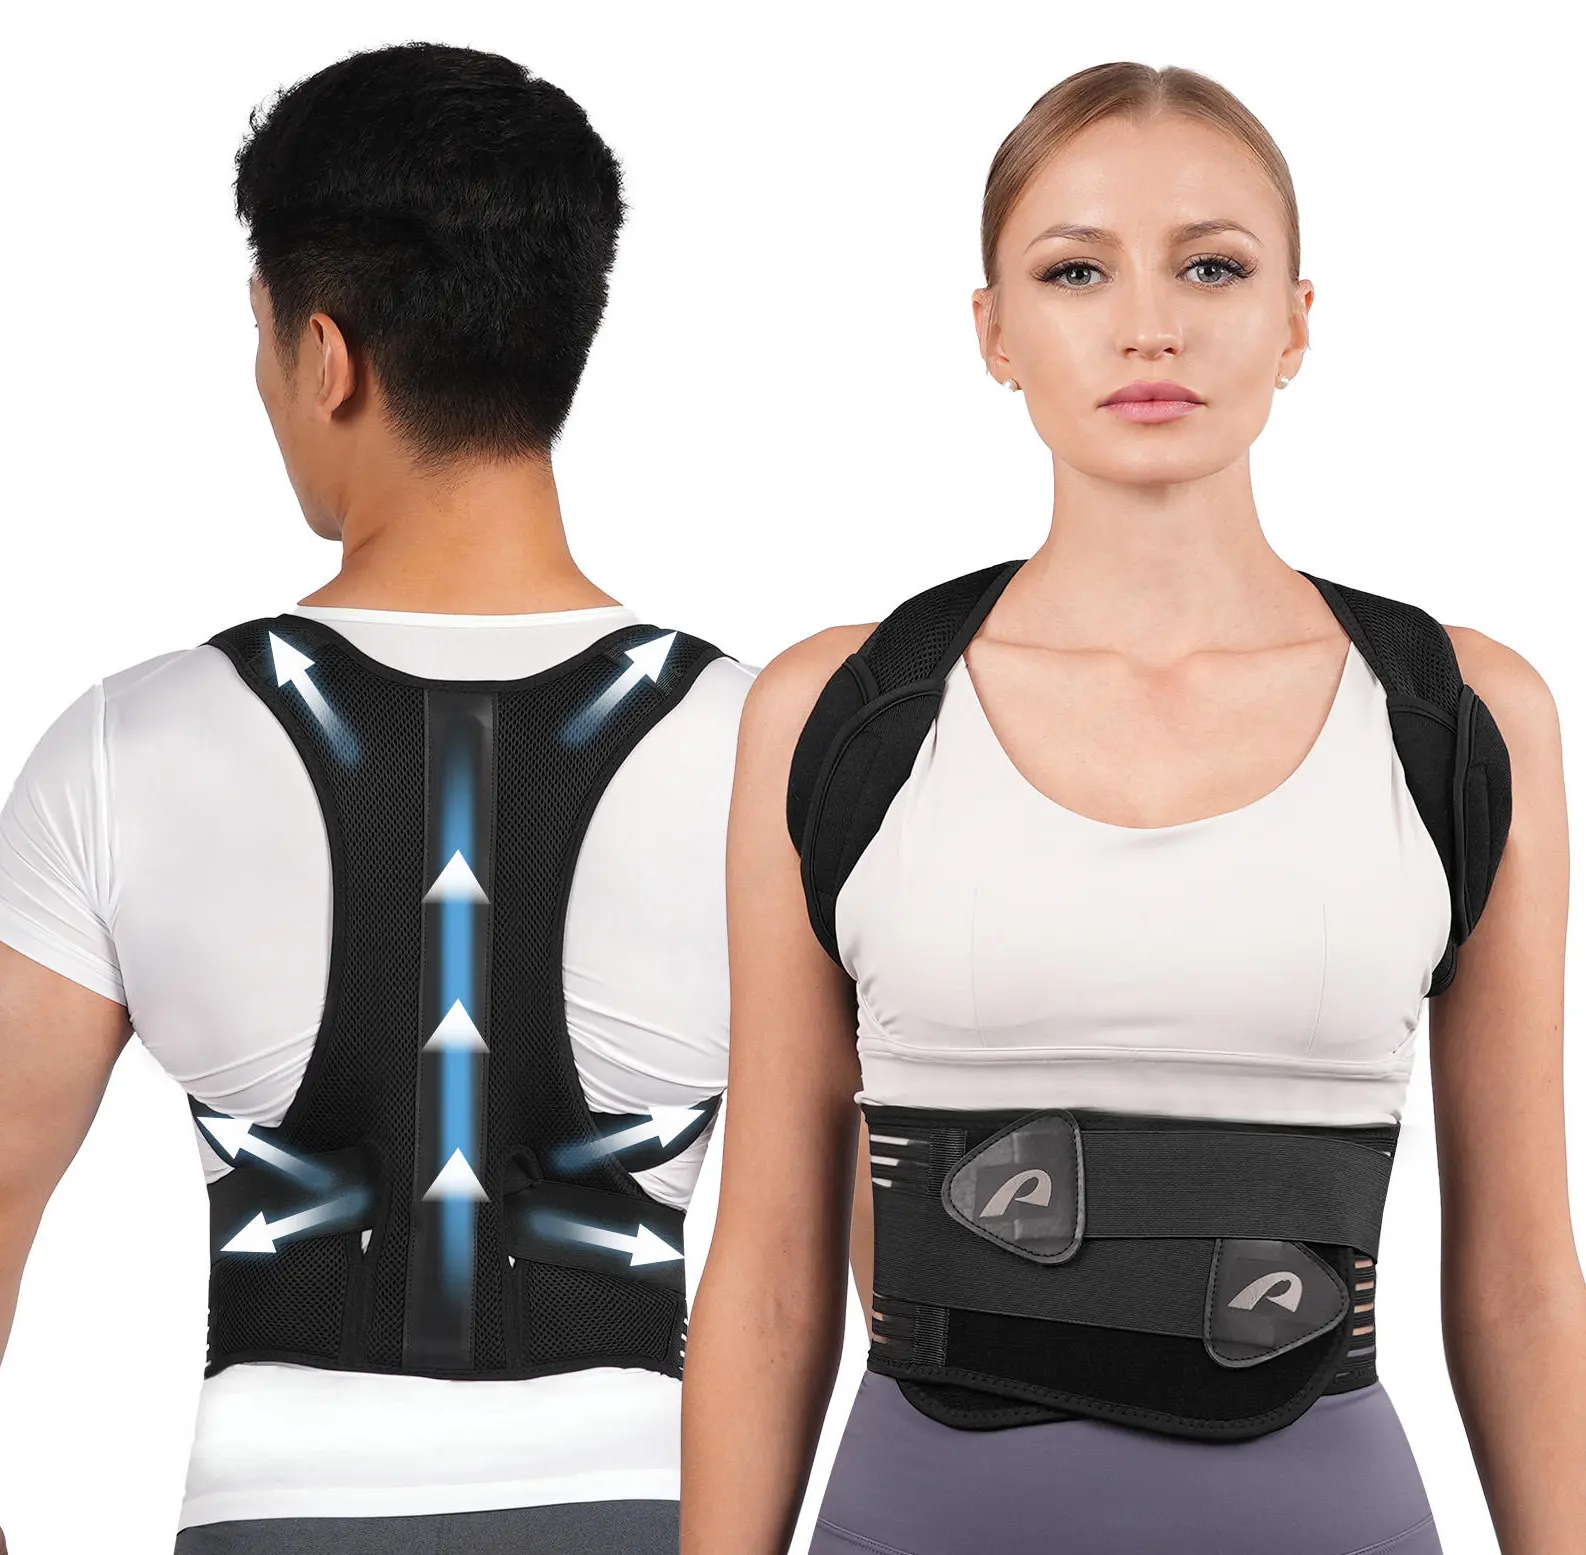 Elastische De Postura Rückenglätter Schulterhaltungs-Korrektor-Gürtel Orthopädische Rückenbandage Gürtelunterstützung Schmerz Lendenwirbel